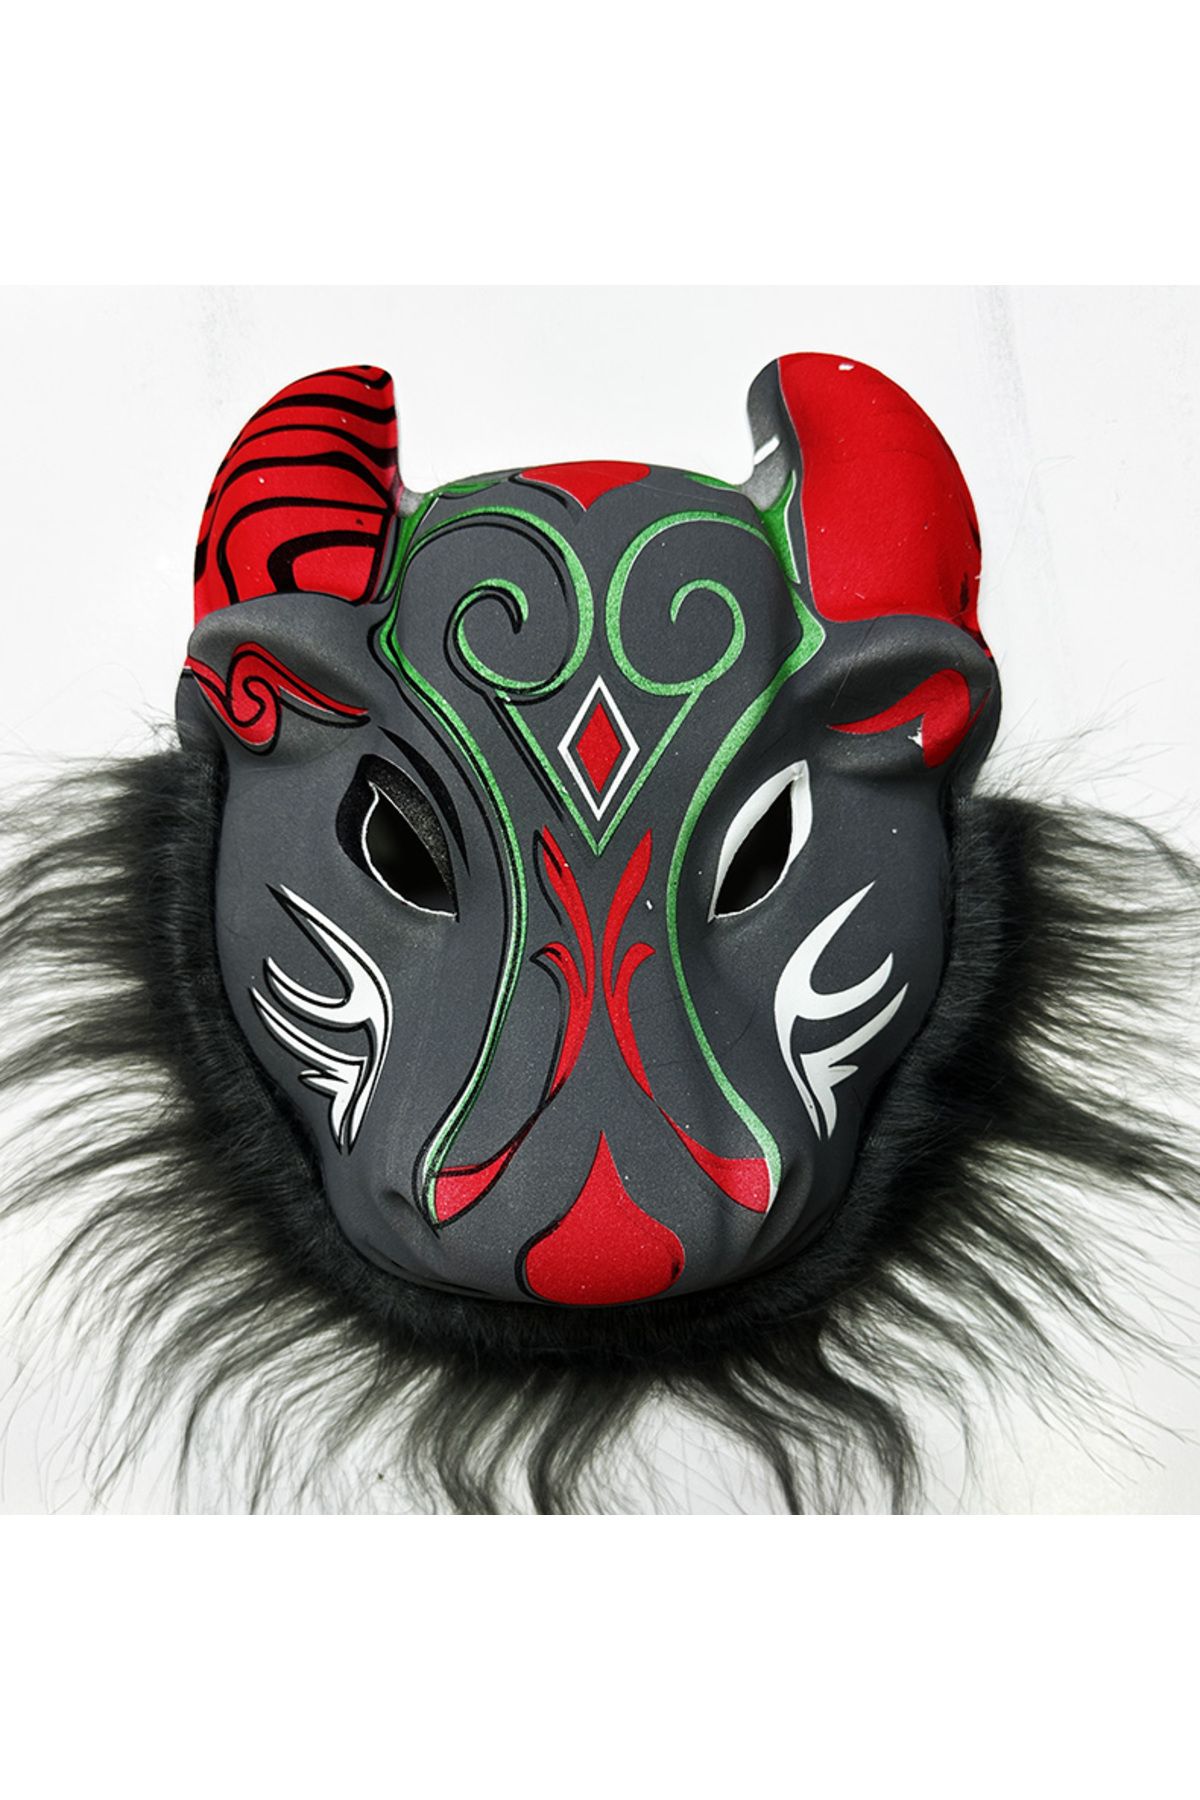 ERTEN Bufalo Maskesi - Kırmızı Boynuzlu Bufalo Maskesi Yetişkin Çocuk Uyumlu Model 4 (4352)